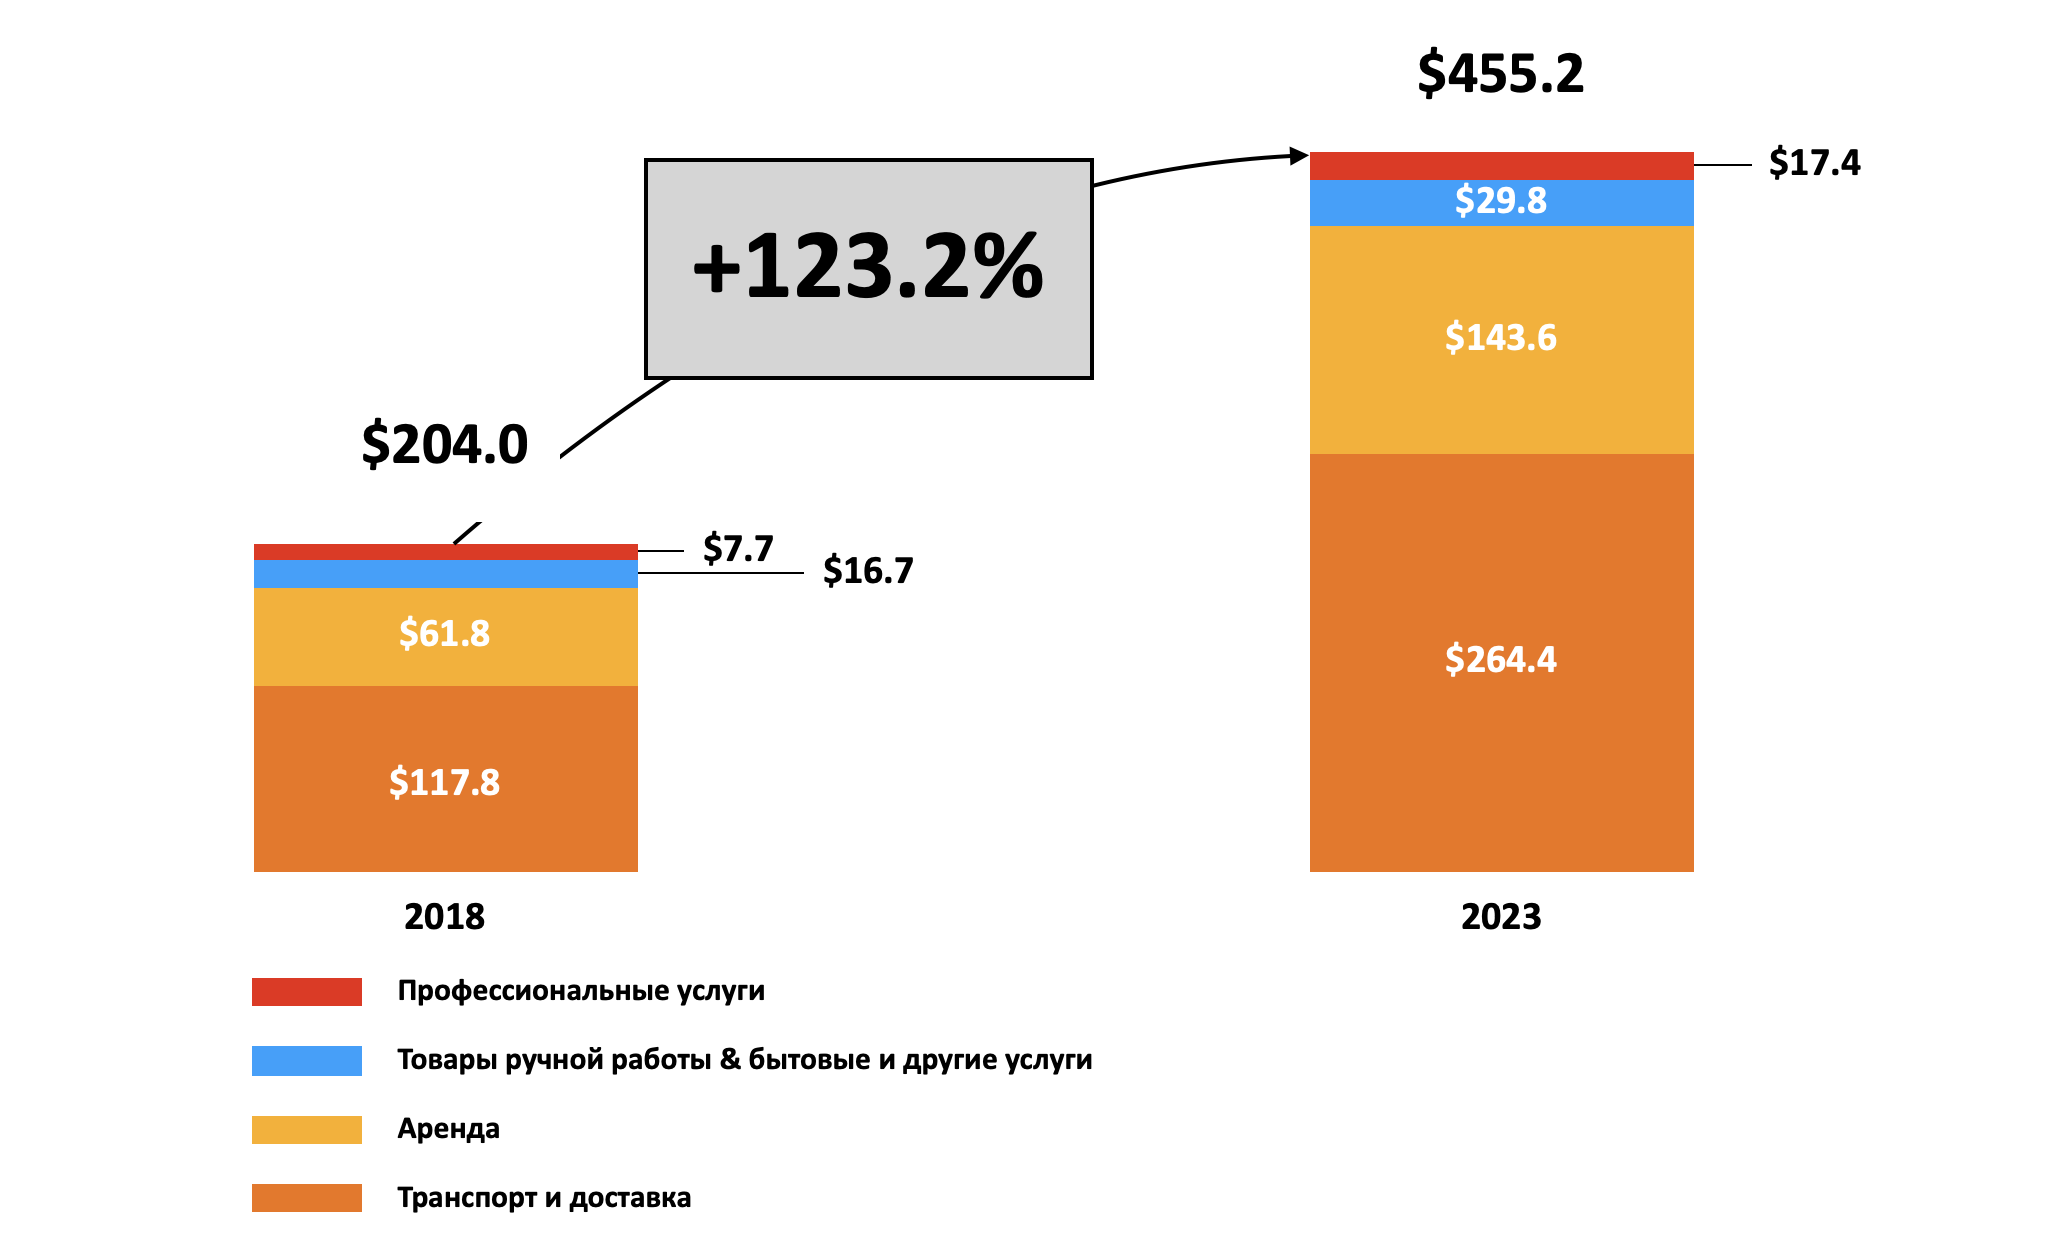 Объем платформенной экономики по секторам 2018 и 2023 в мире (млрд долл).